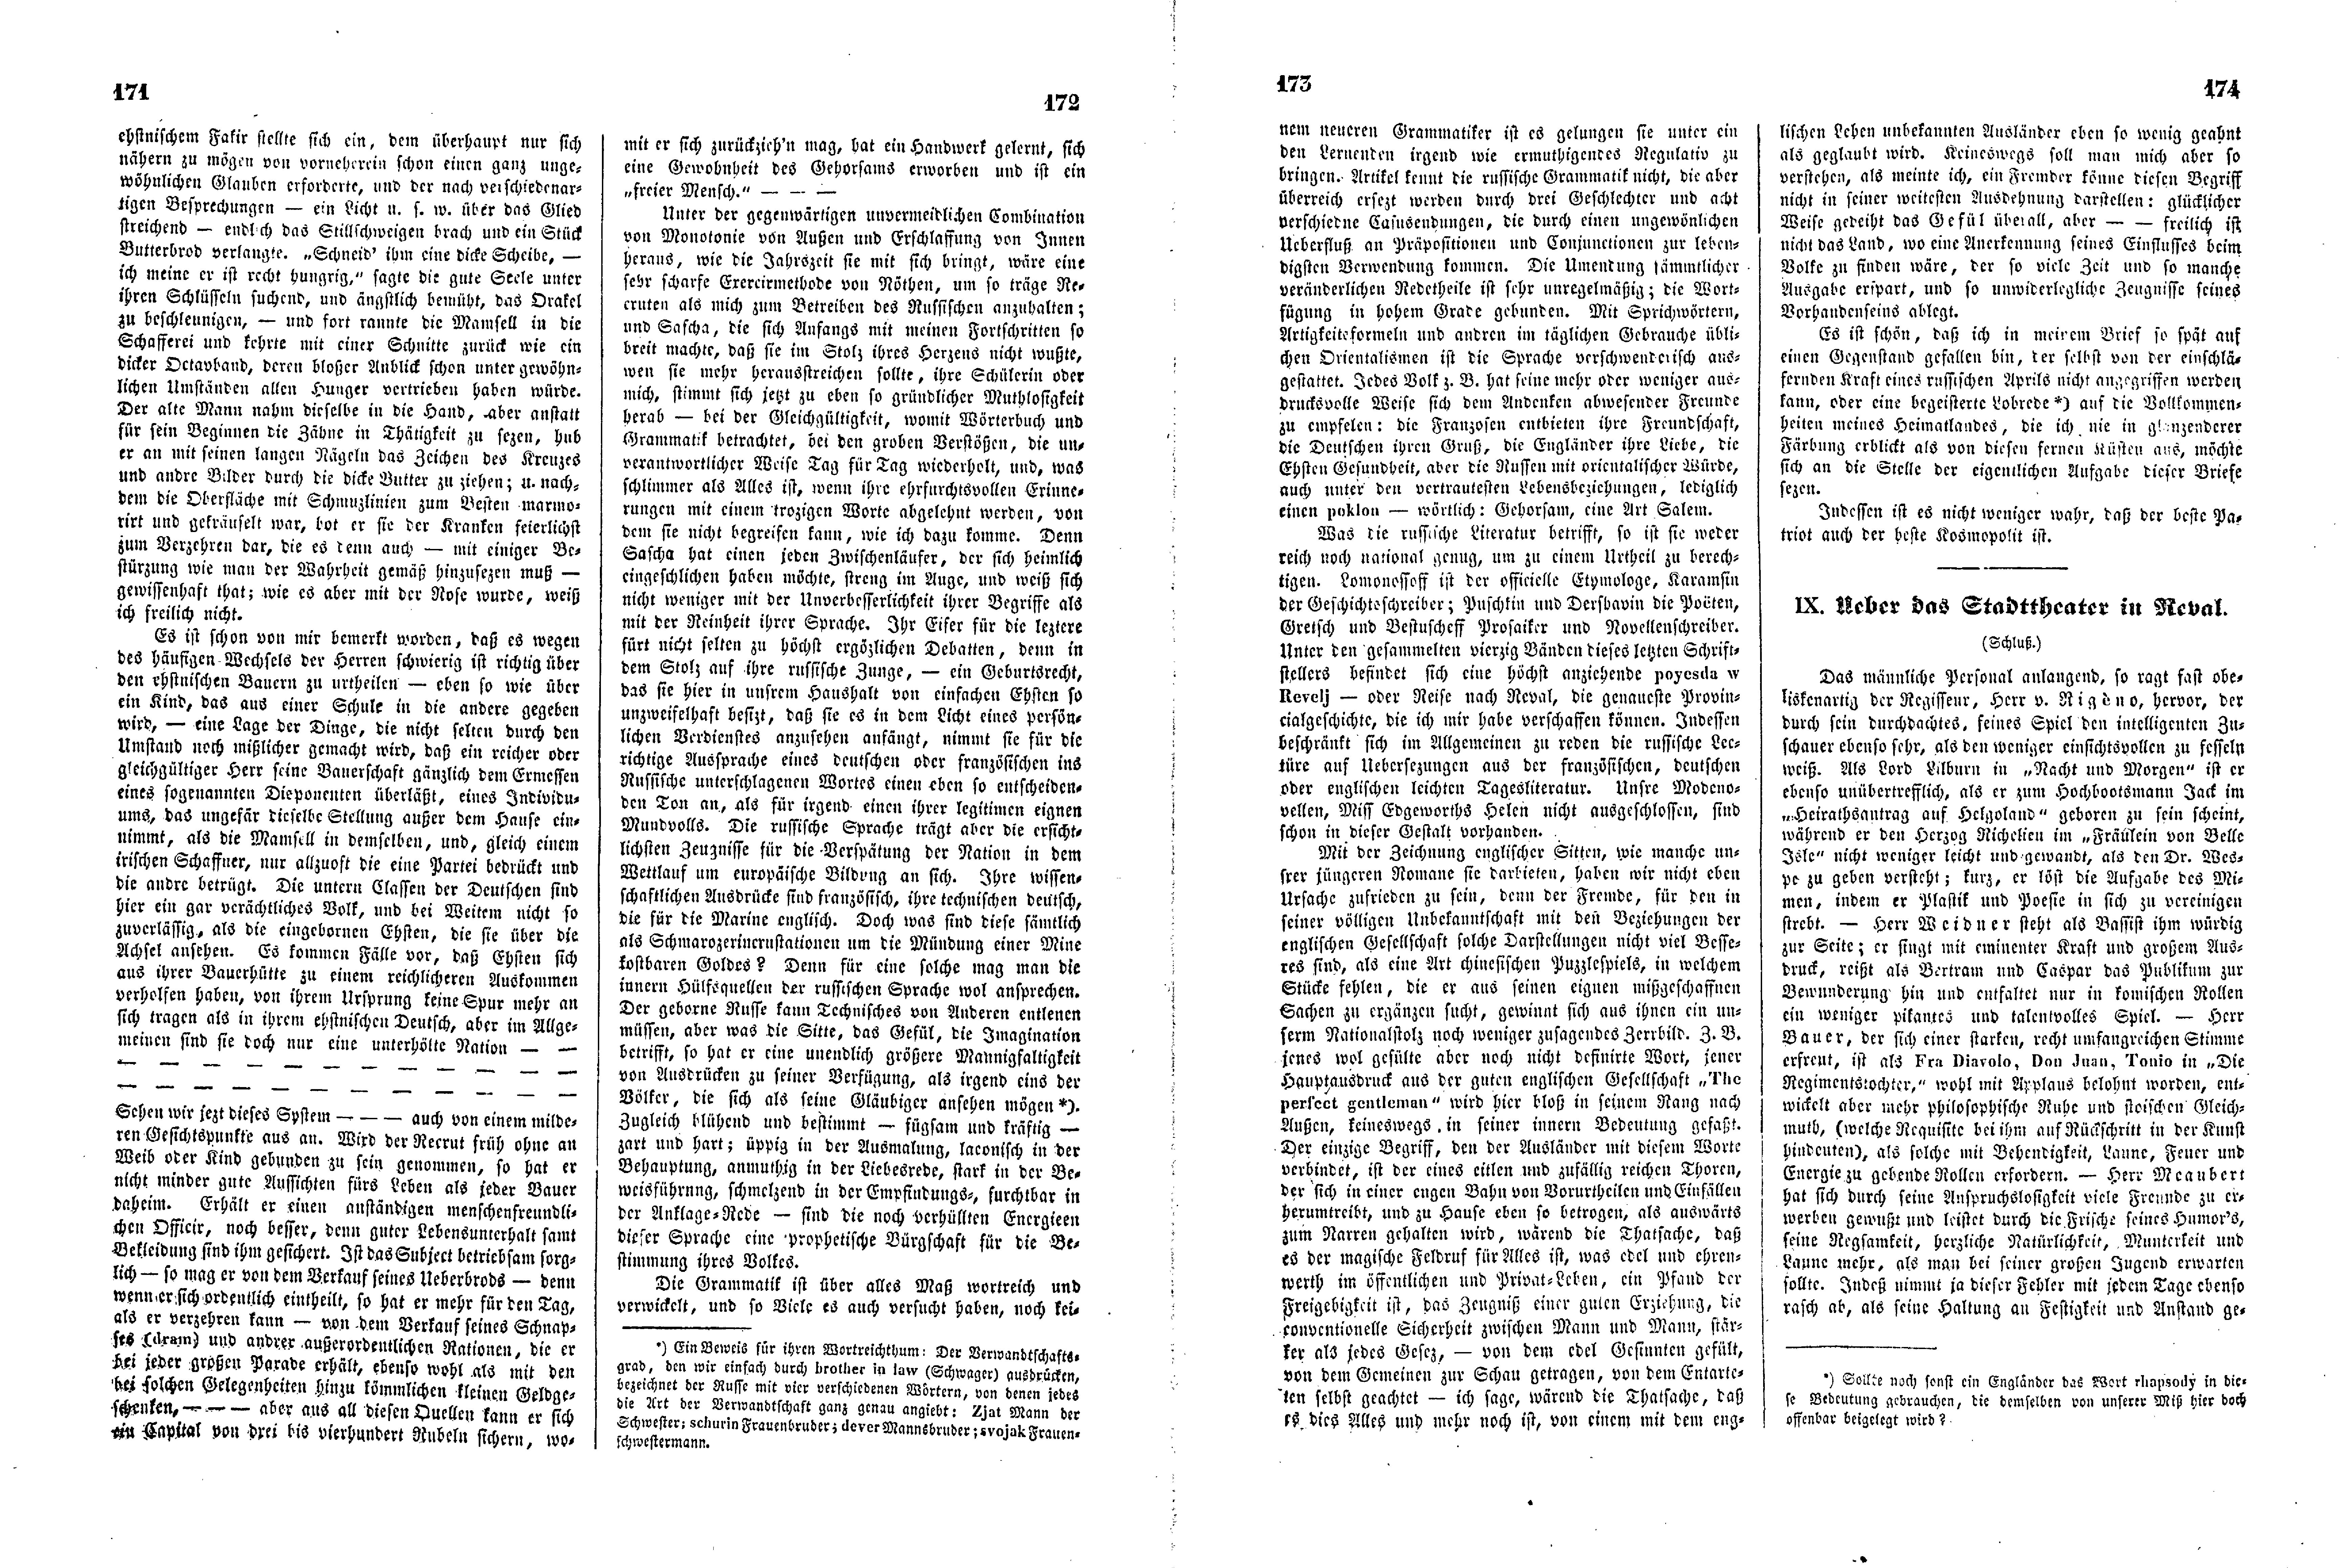 Das Inland [11] (1846) | 48. (171-174) Haupttext